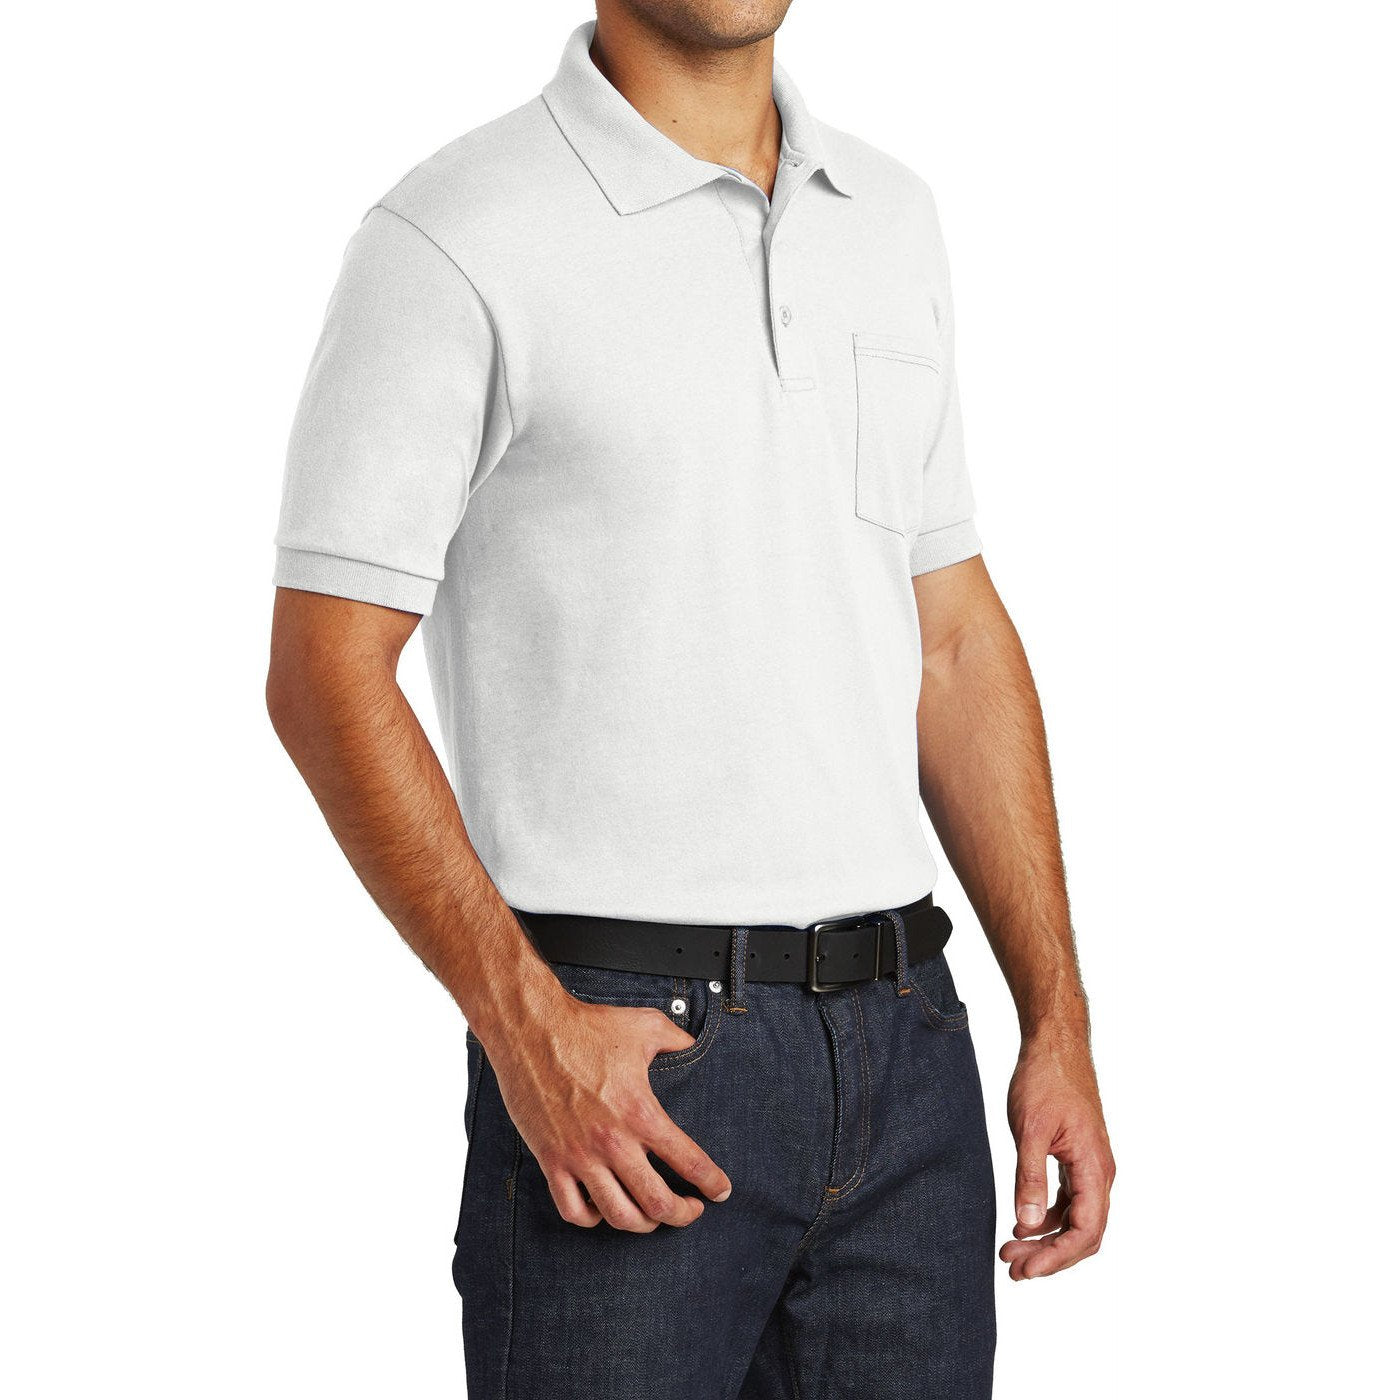 Mafoose Men's Core Blend Jersey Knit Pocket Polo Shirt White